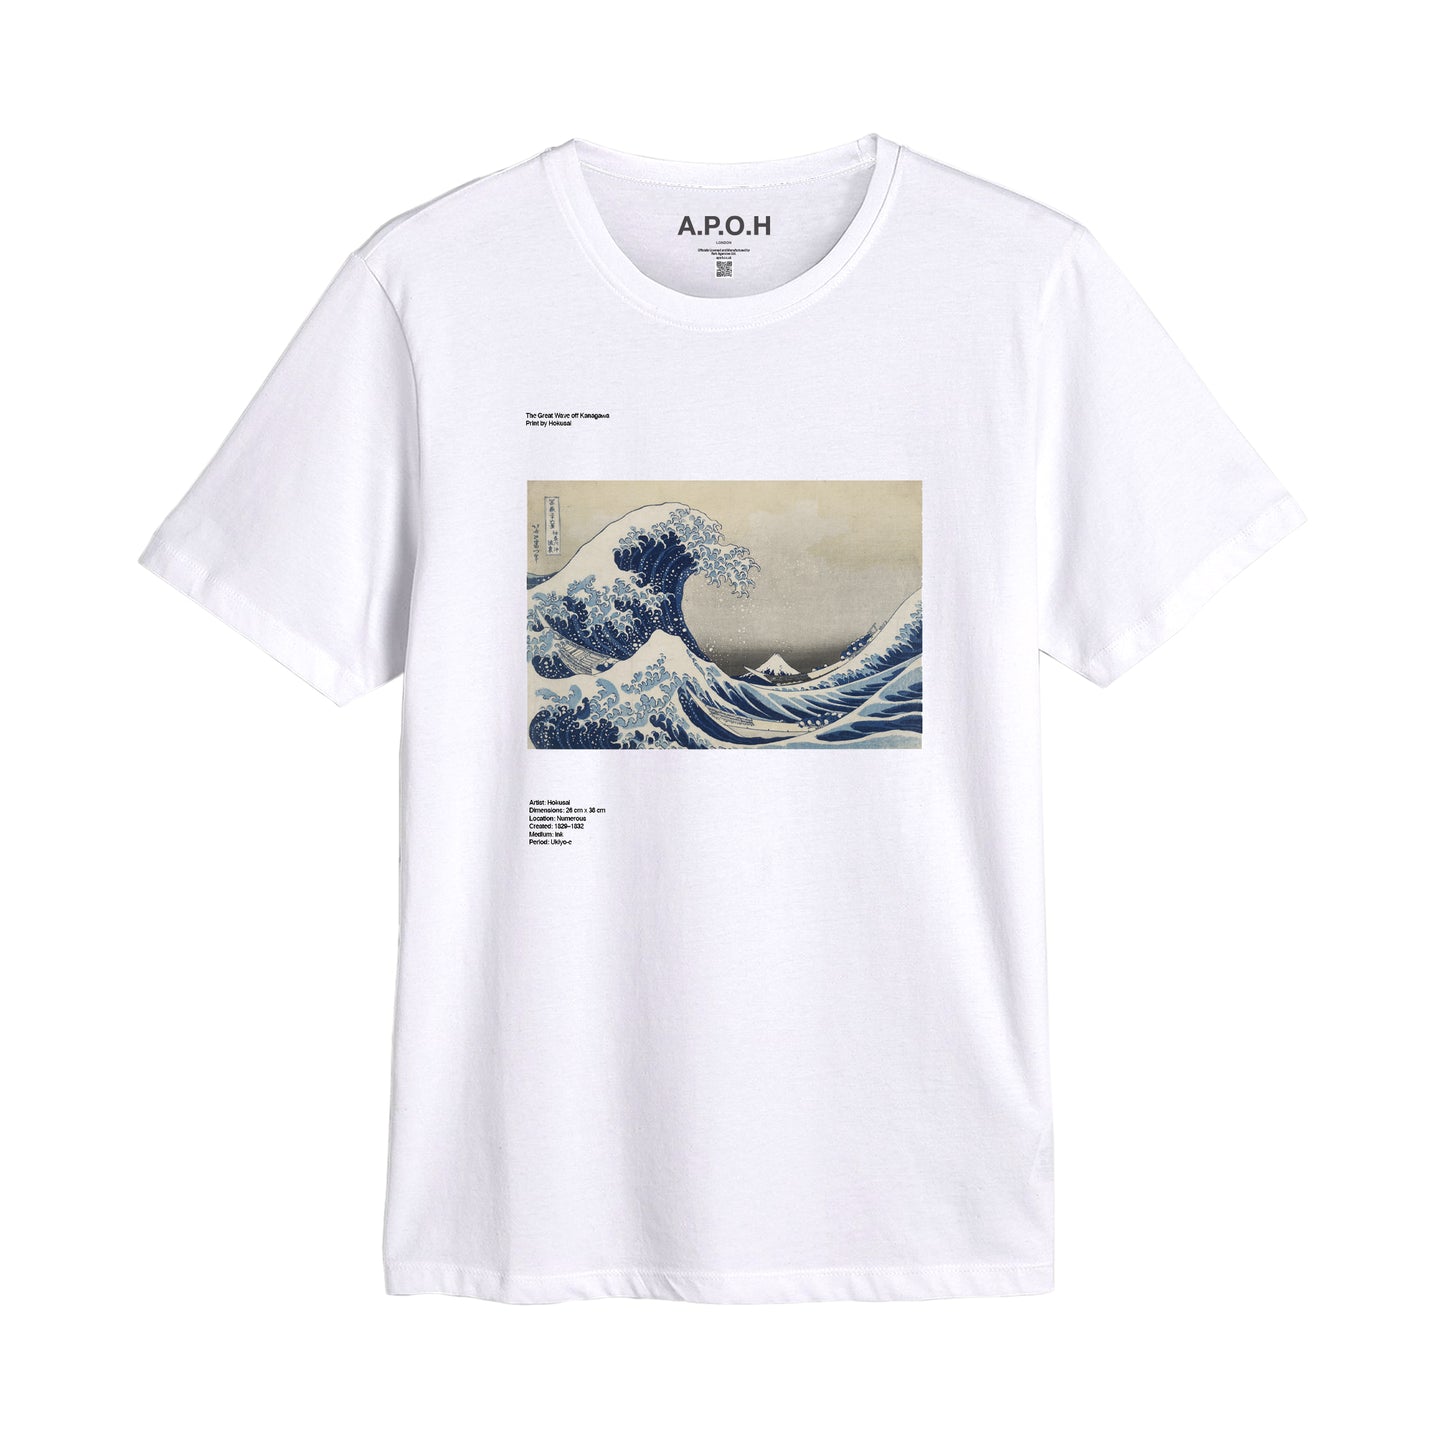 Hokusai's The Great Wave off Kanagawa Placement T-shirt